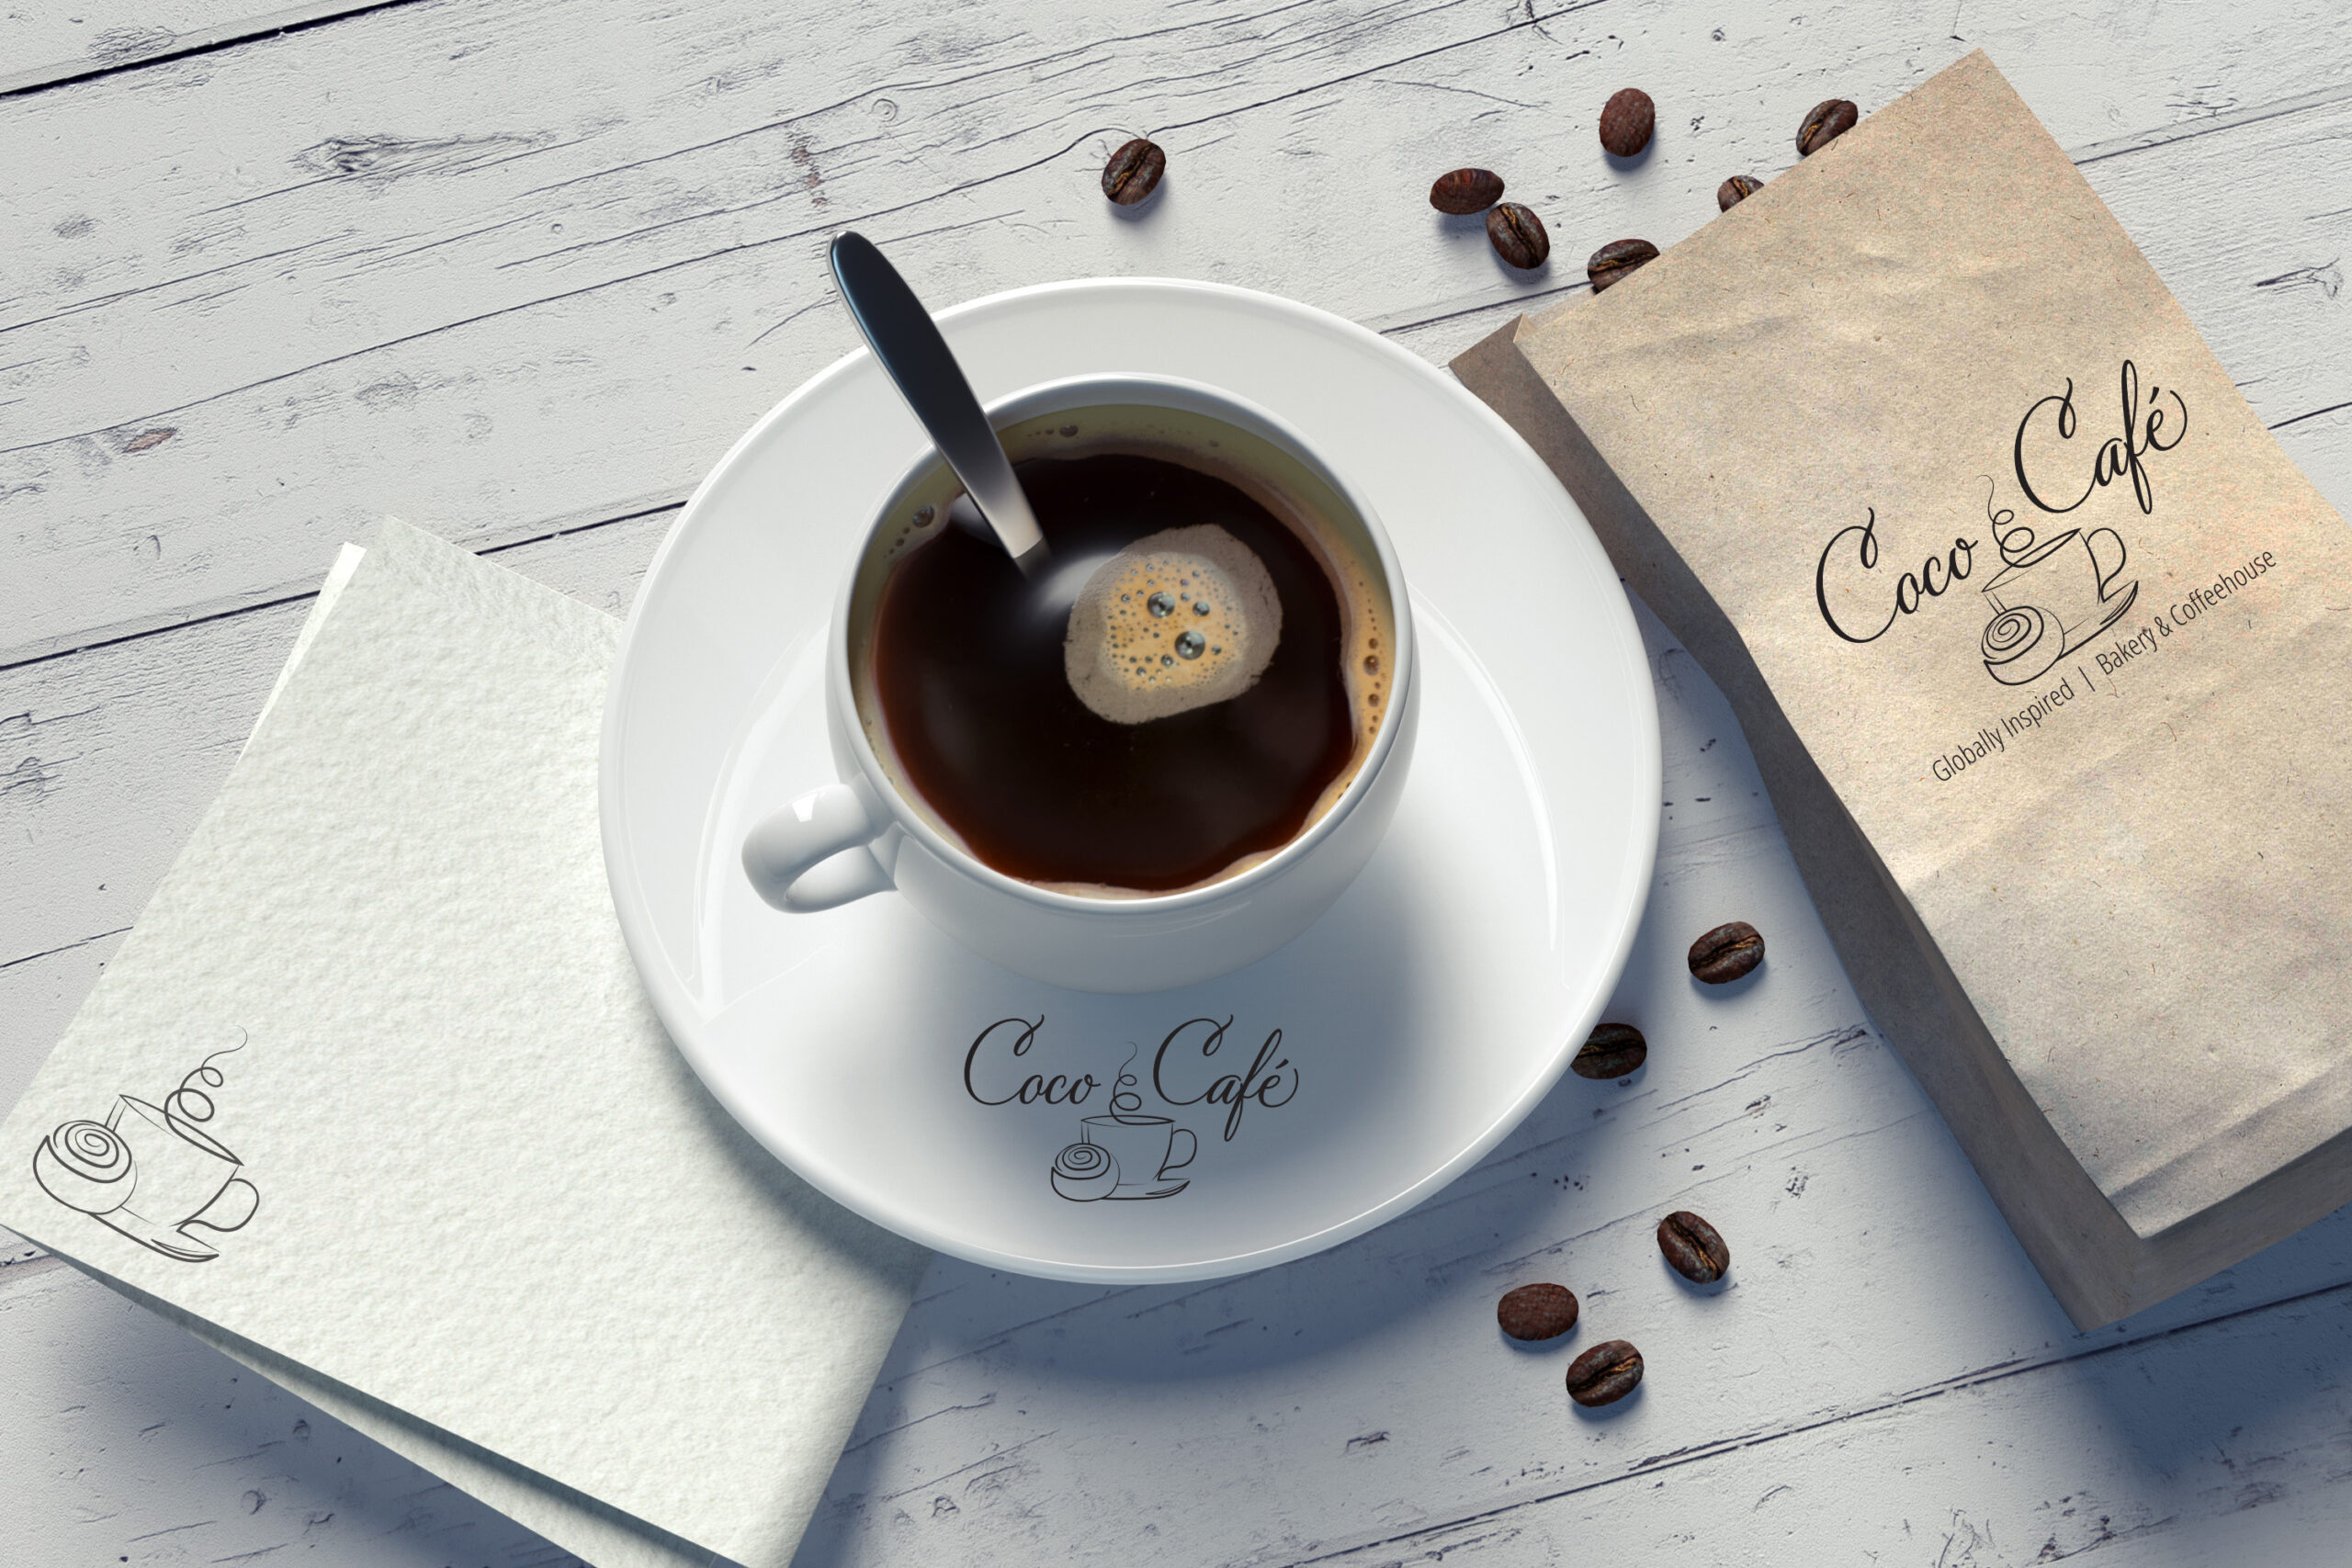 napkin, coffee mug, and coffee beans bag with coco café logo 